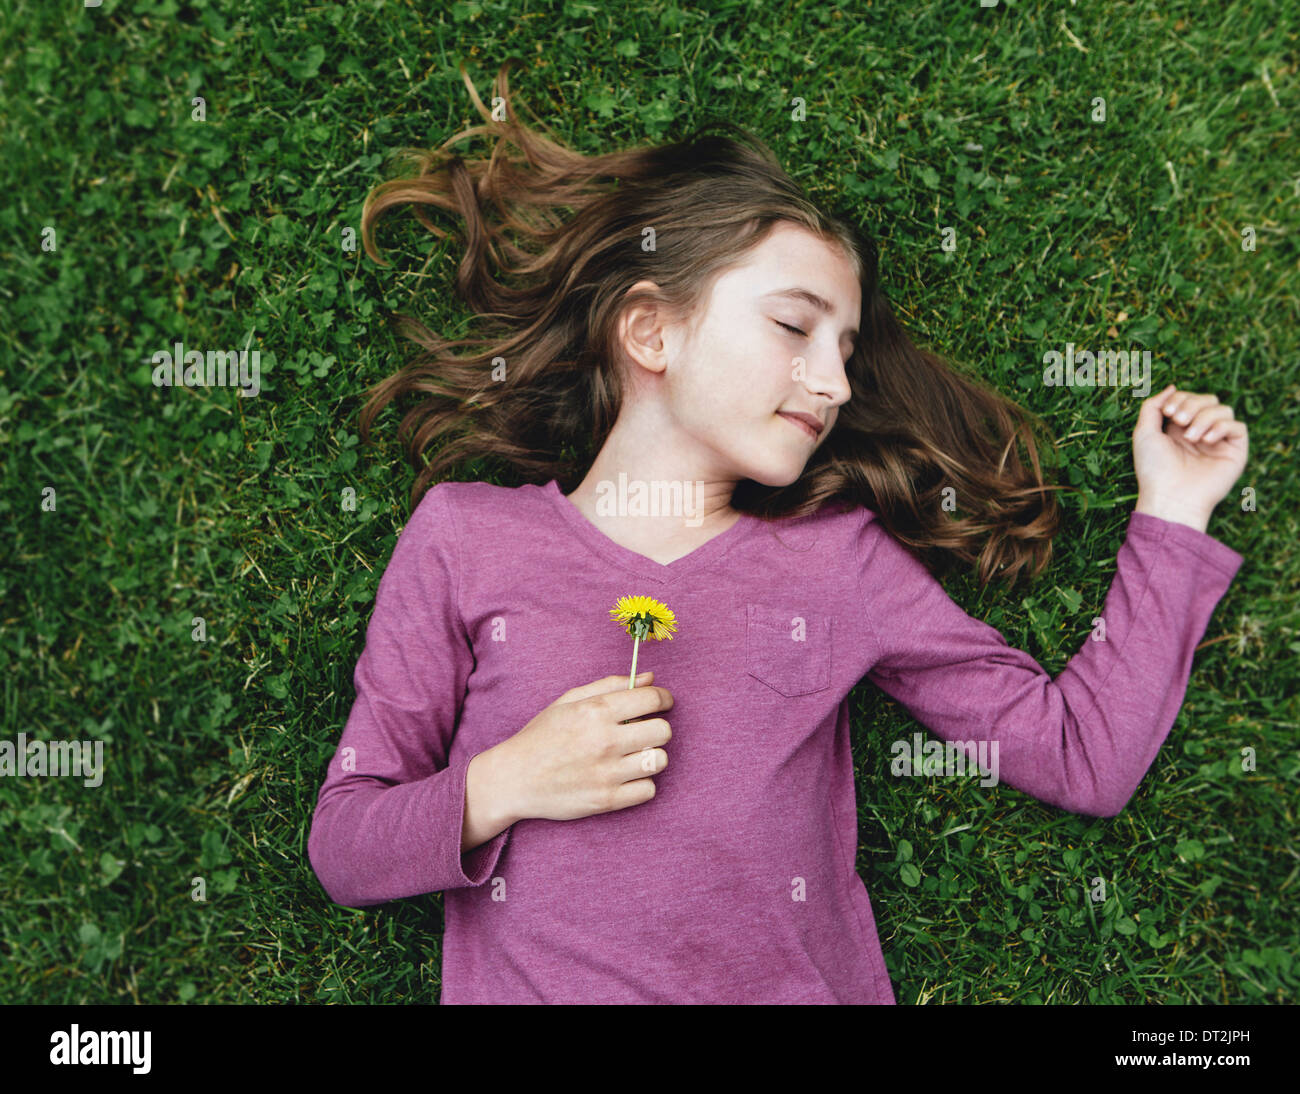 Une fillette de dix ans couché dans l'herbe avec ses yeux fermés tenant une fleur de pissenlit Banque D'Images